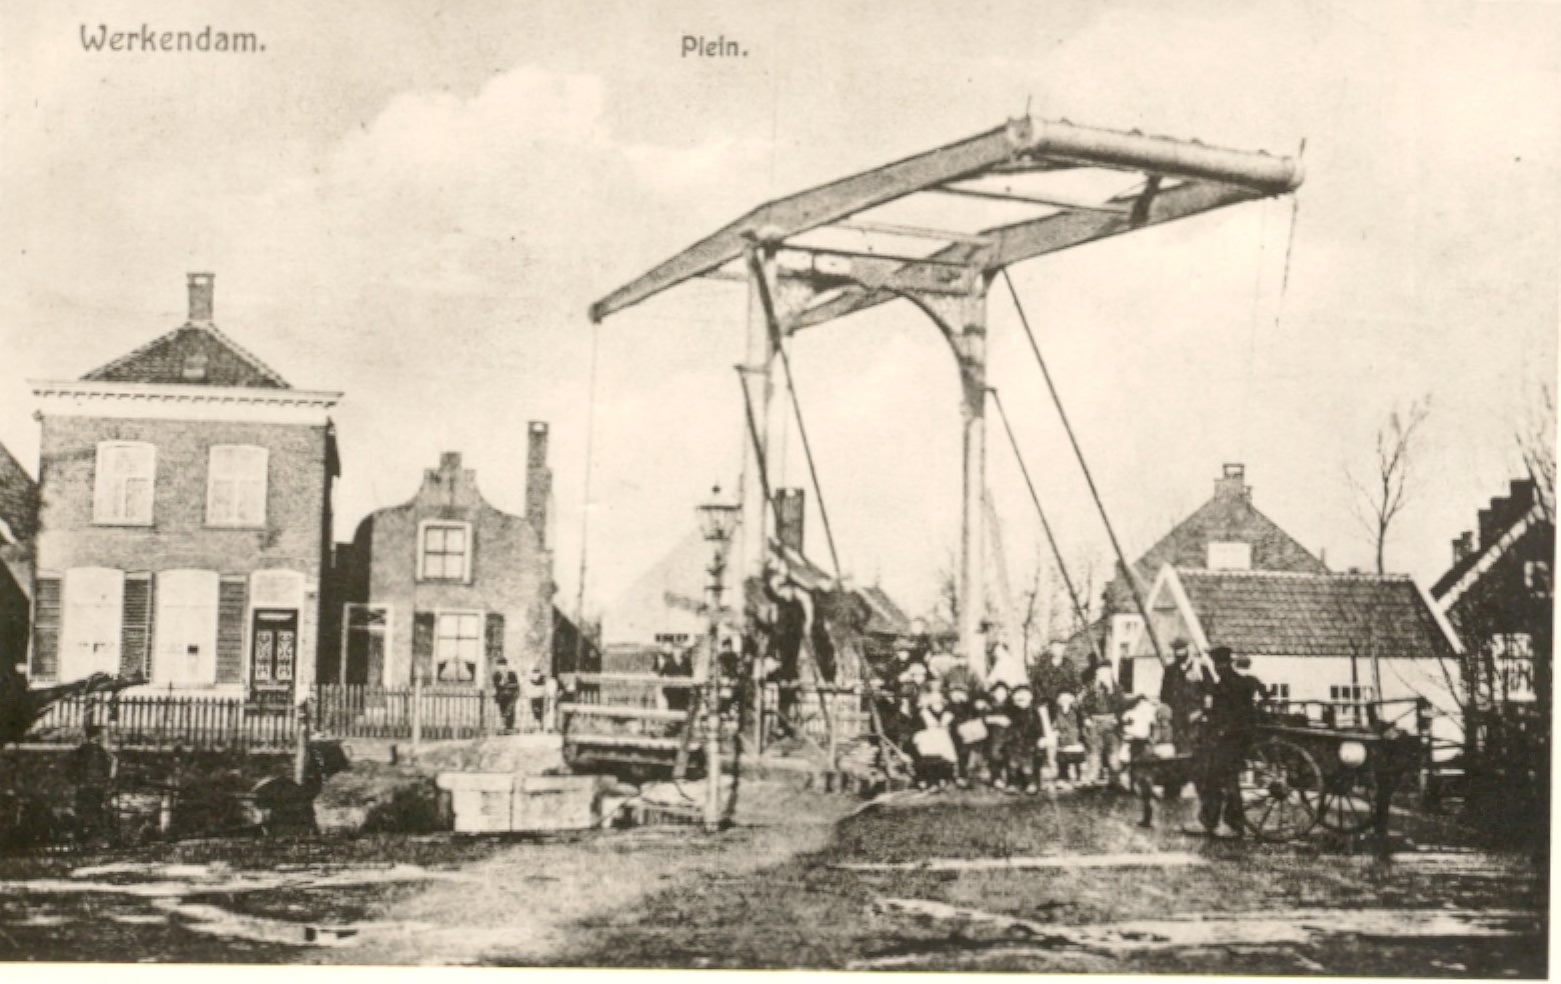 Werkendam, Het Plein met de nieuwe ophaalbrug ter ontsluiting van de buurten Zevenhuizen en Koppenhof, ca. 1915